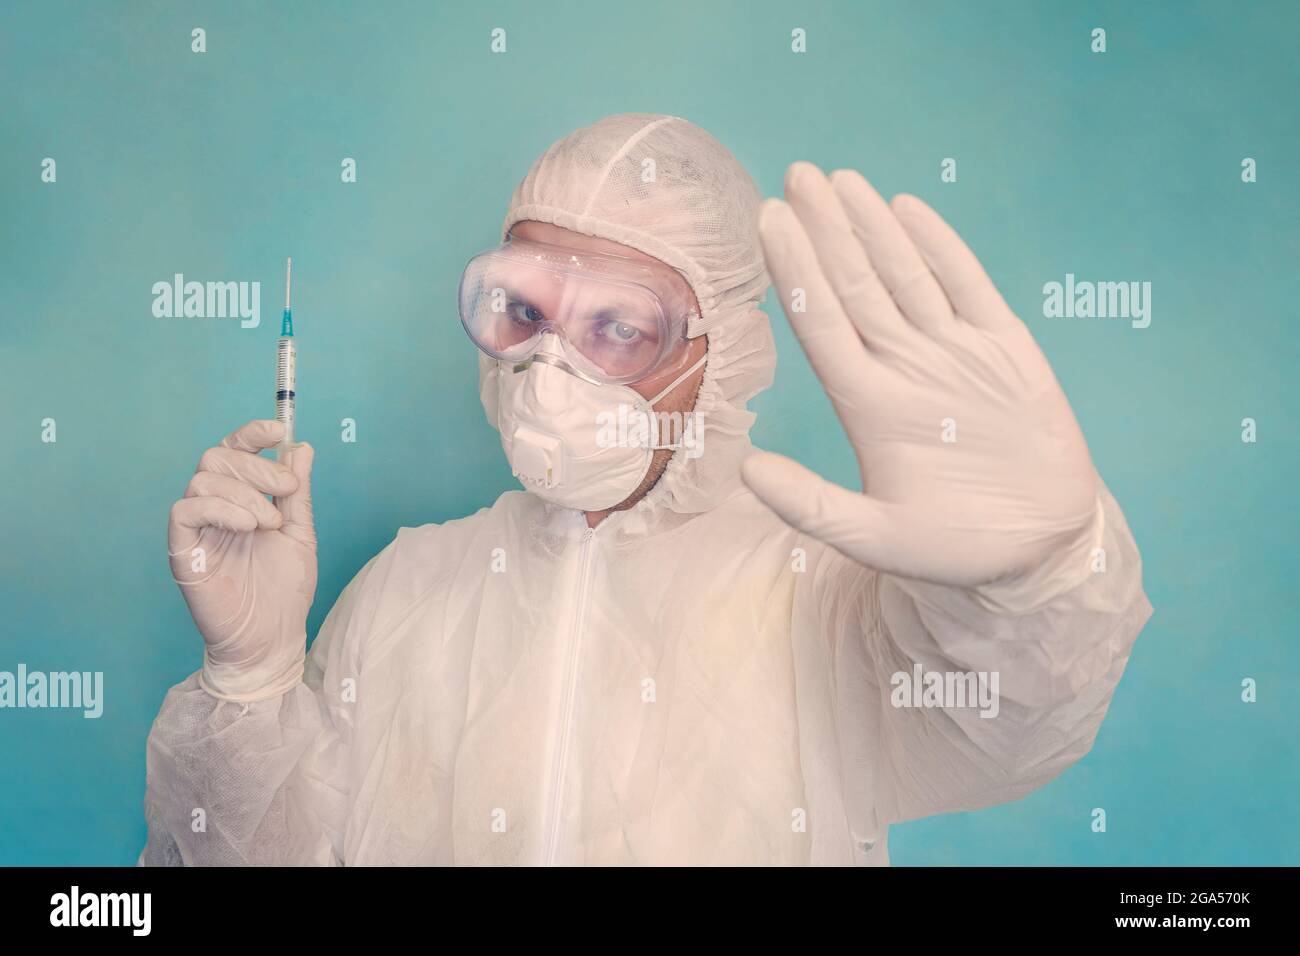 Ritratto del medico maschile in indumenti protettivi, guanti e maschera che tengono una siringa e mostrando un gesto proibitivo con le mani. Medicina e assistenza sanitaria co Foto Stock